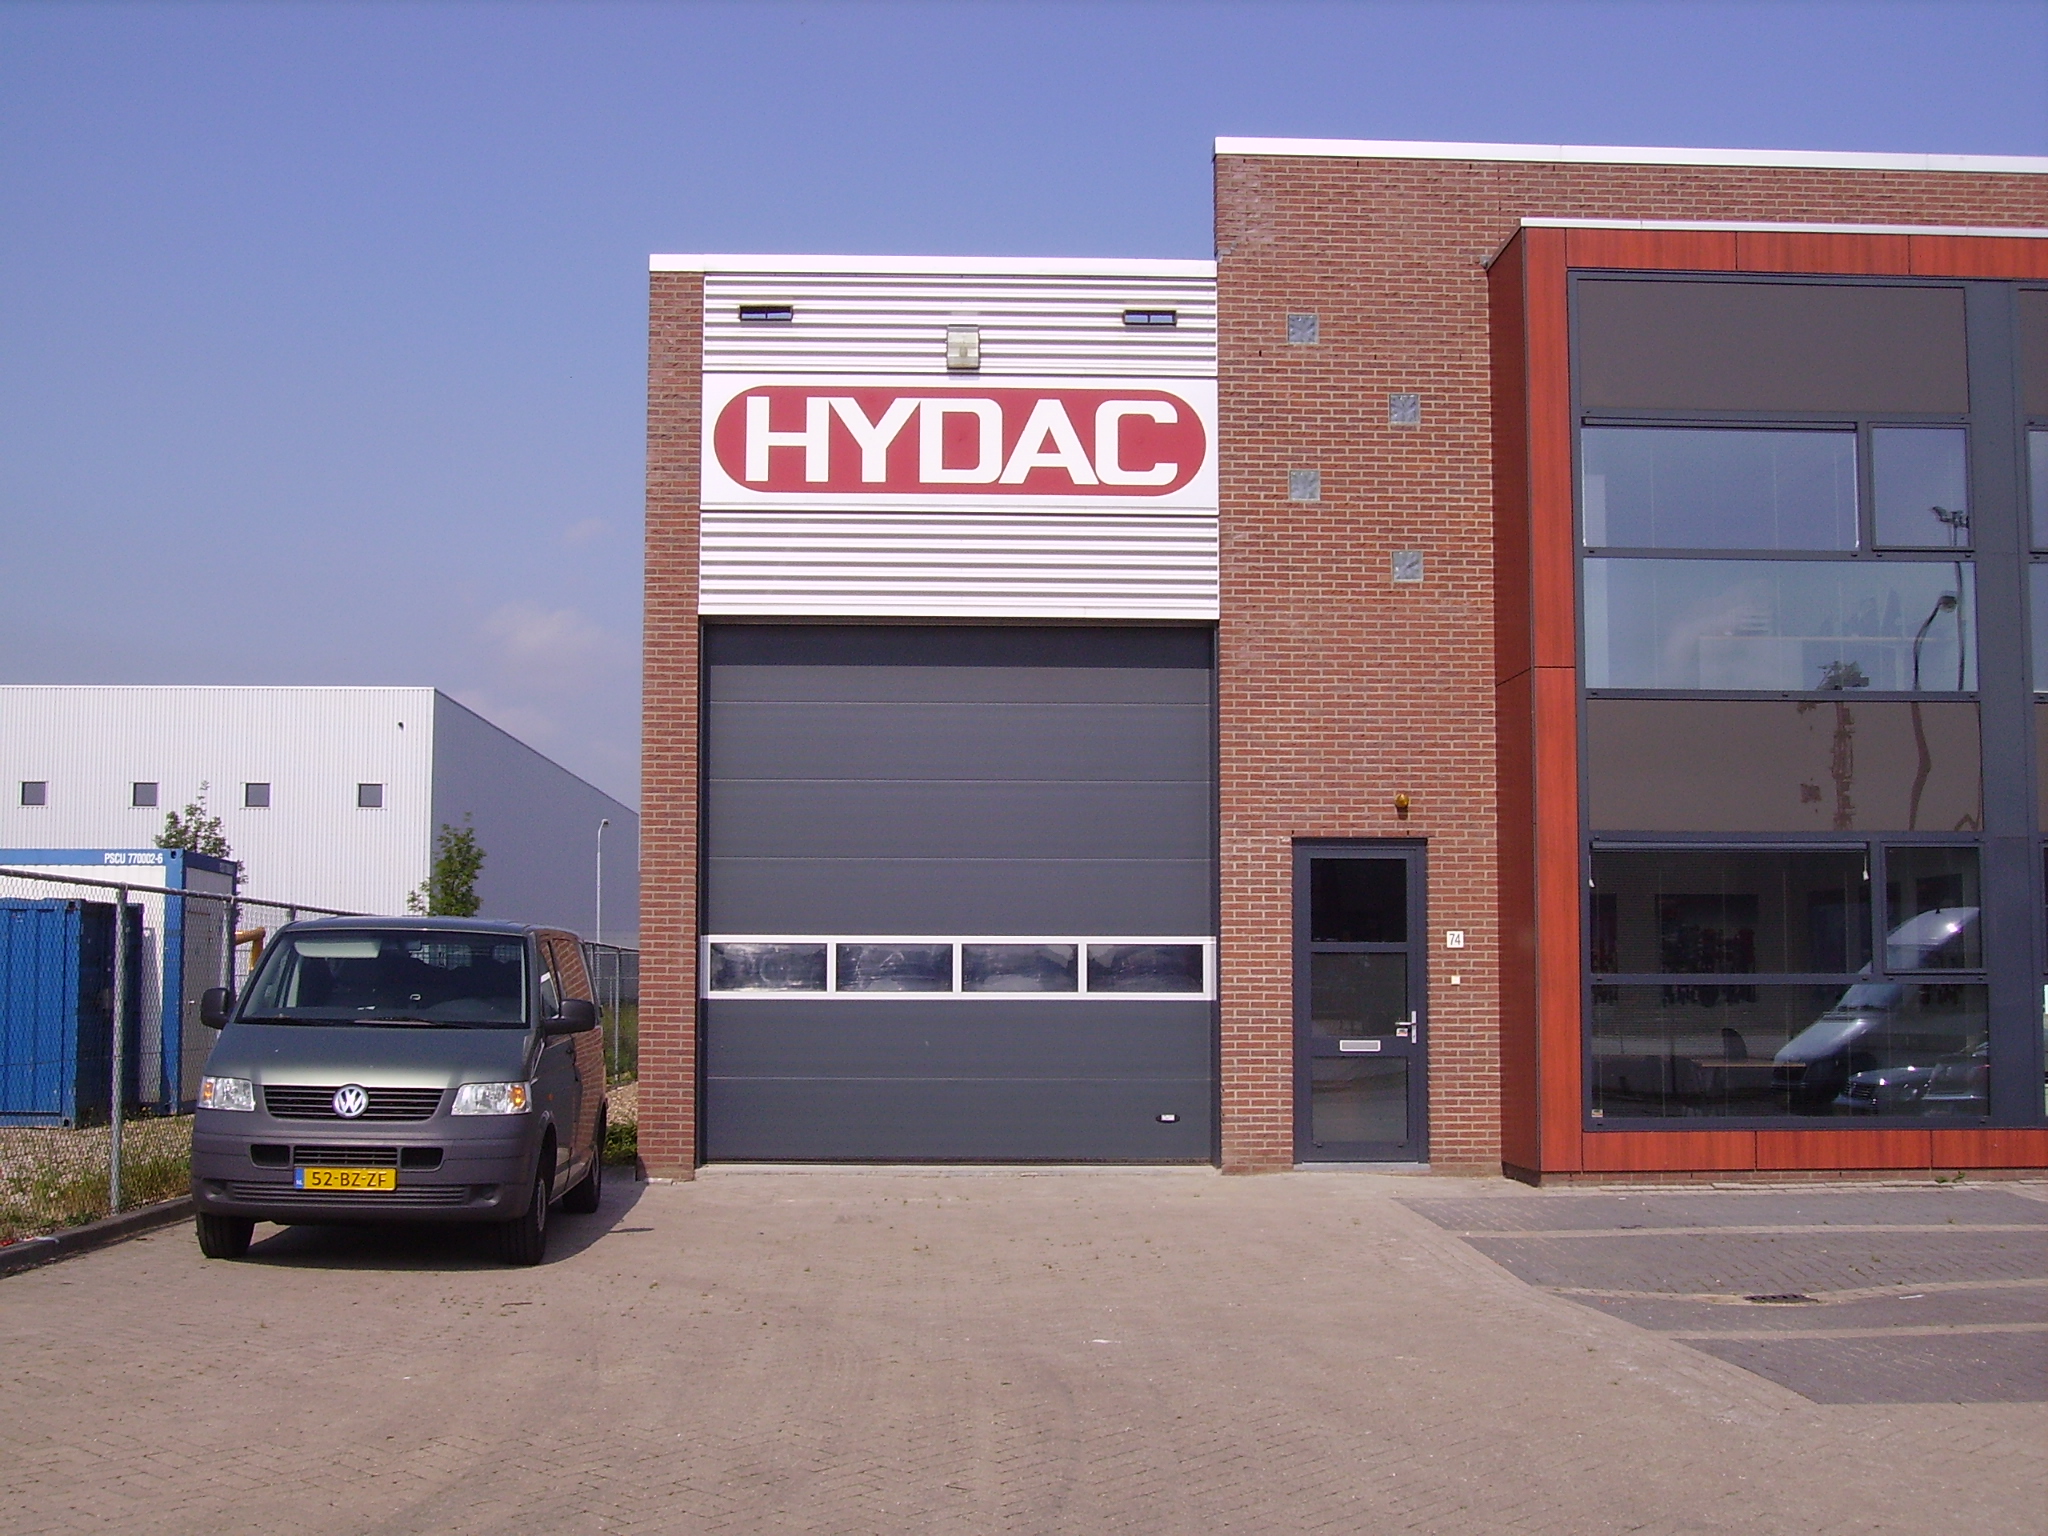 Hydac opent vestiging in regio Rotterdam